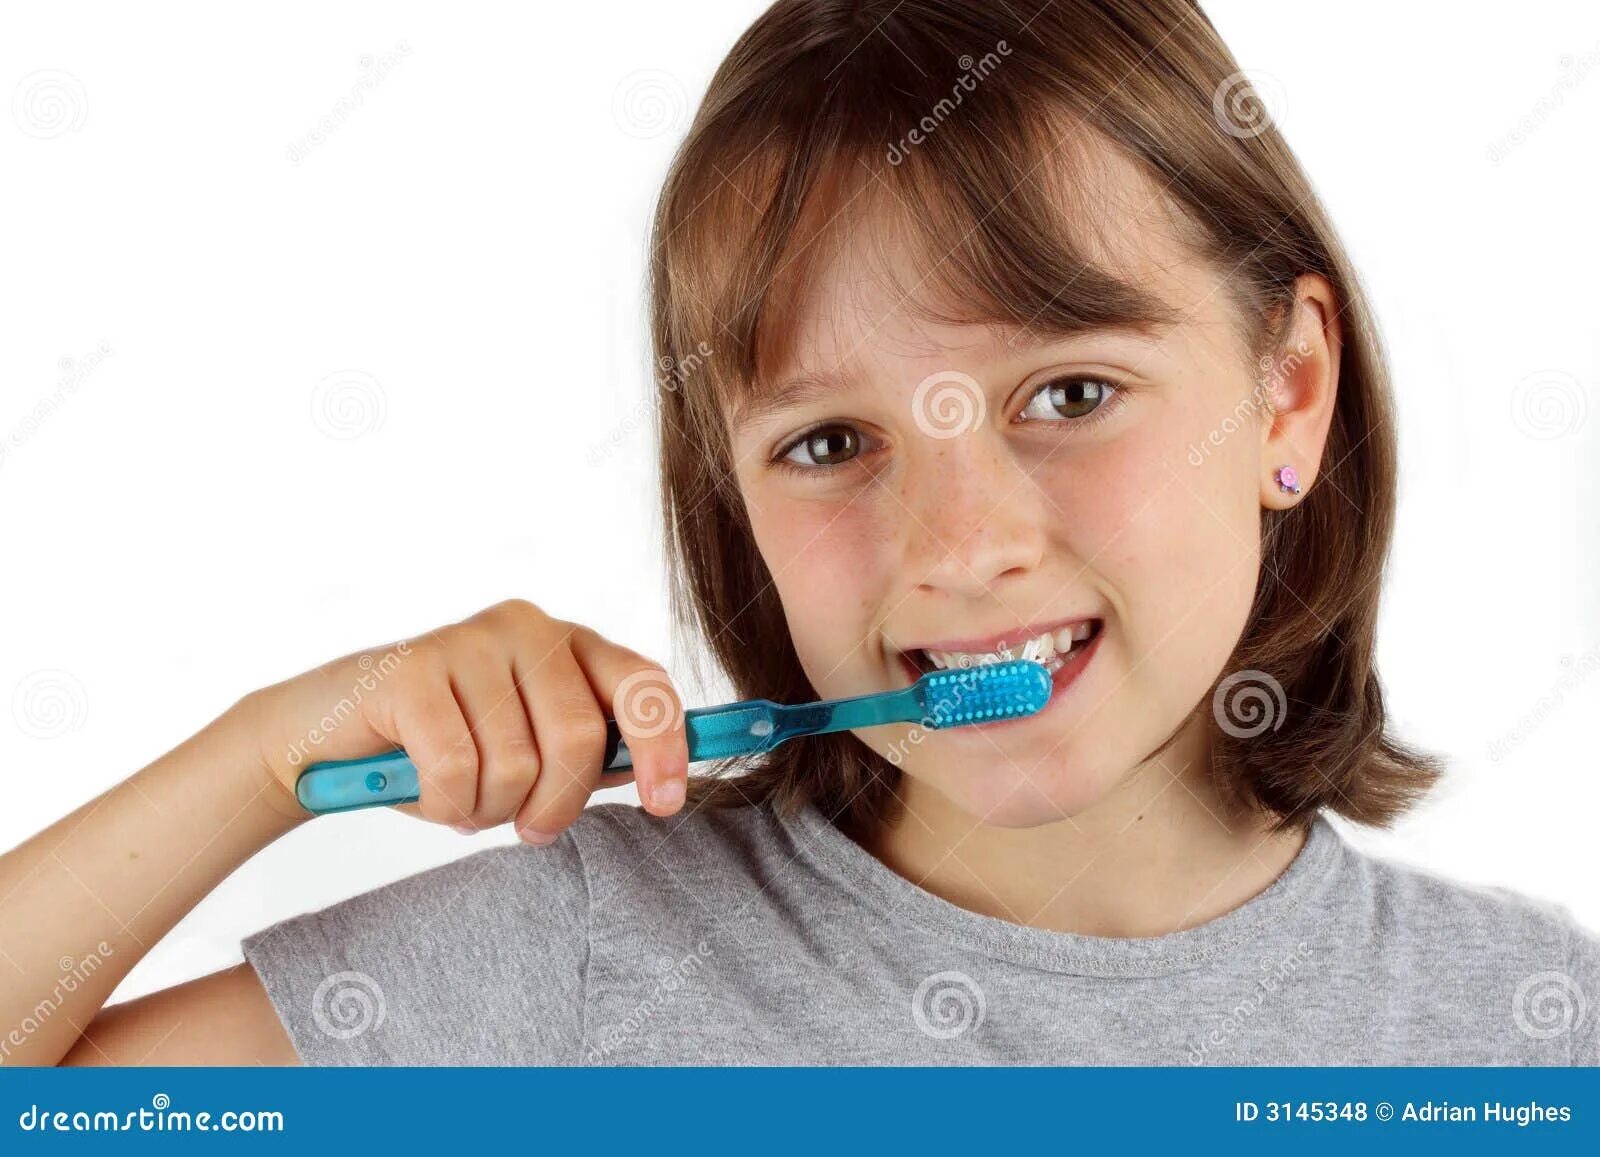 Девочка с зубной щеткой. Девочка чистит зубы. Девочка с зубами и щеткой. Маша чистит зубы щеткой. Утром зубы чищу танцую